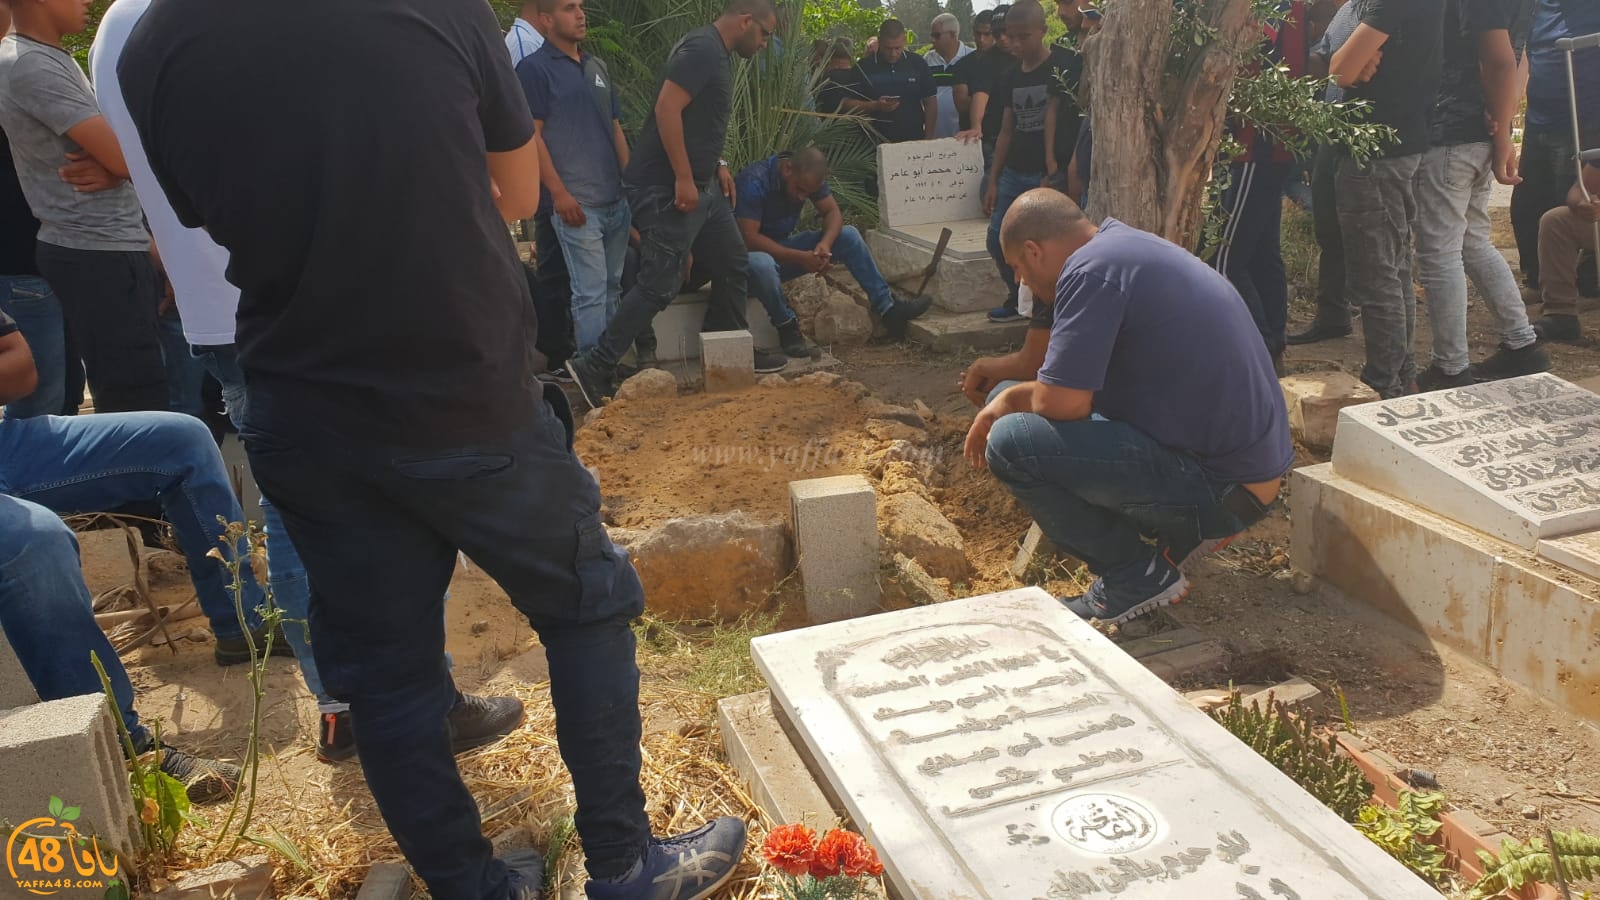   بالفيديو: جمع غفير من أهالي الرملة يشيعون جثمان الشاب أكرم أبو عامر